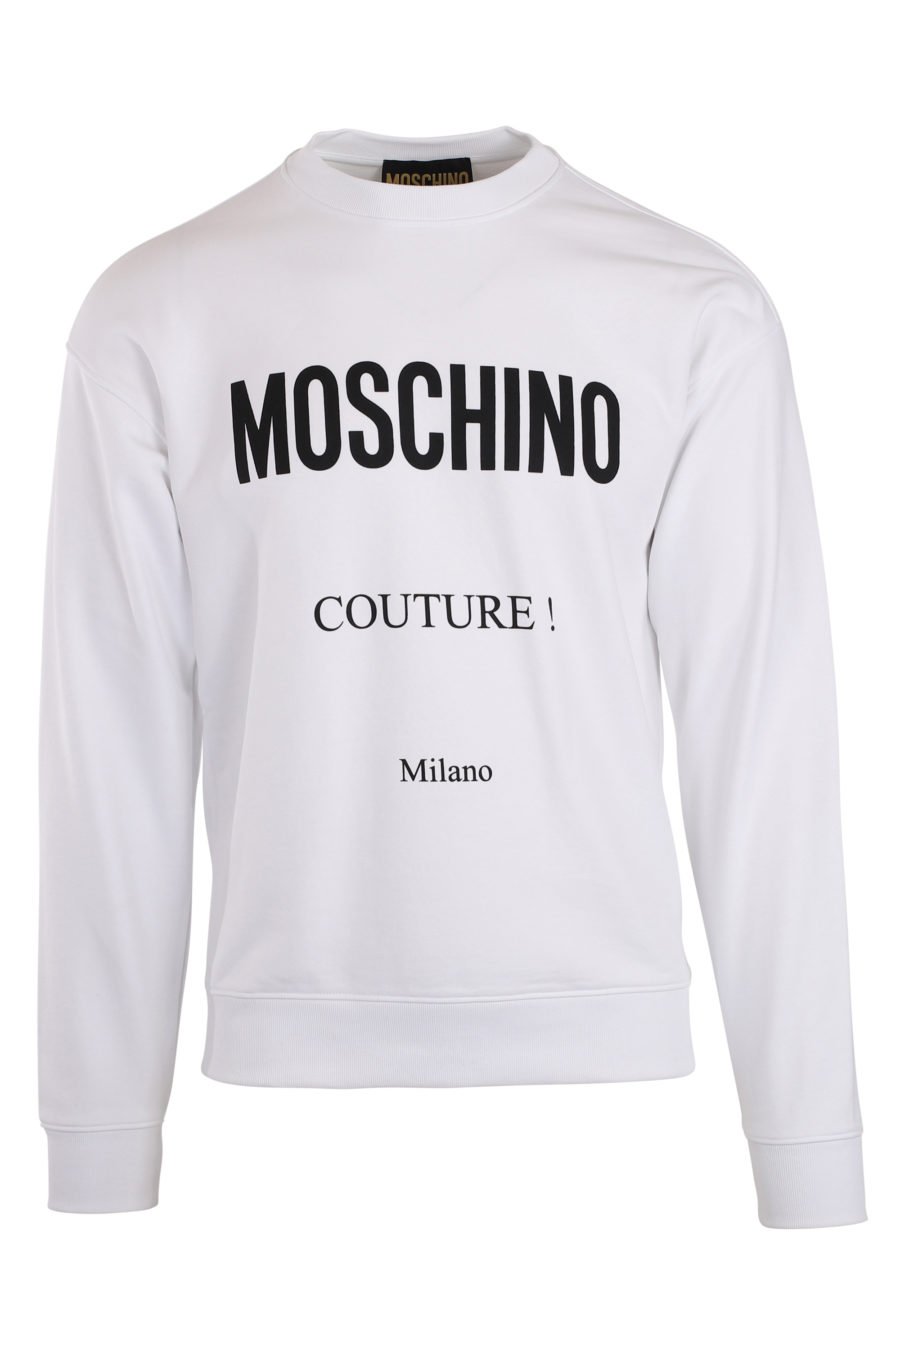 Camisola branca com o logótipo "fantasy" da Milano - IMG 0040